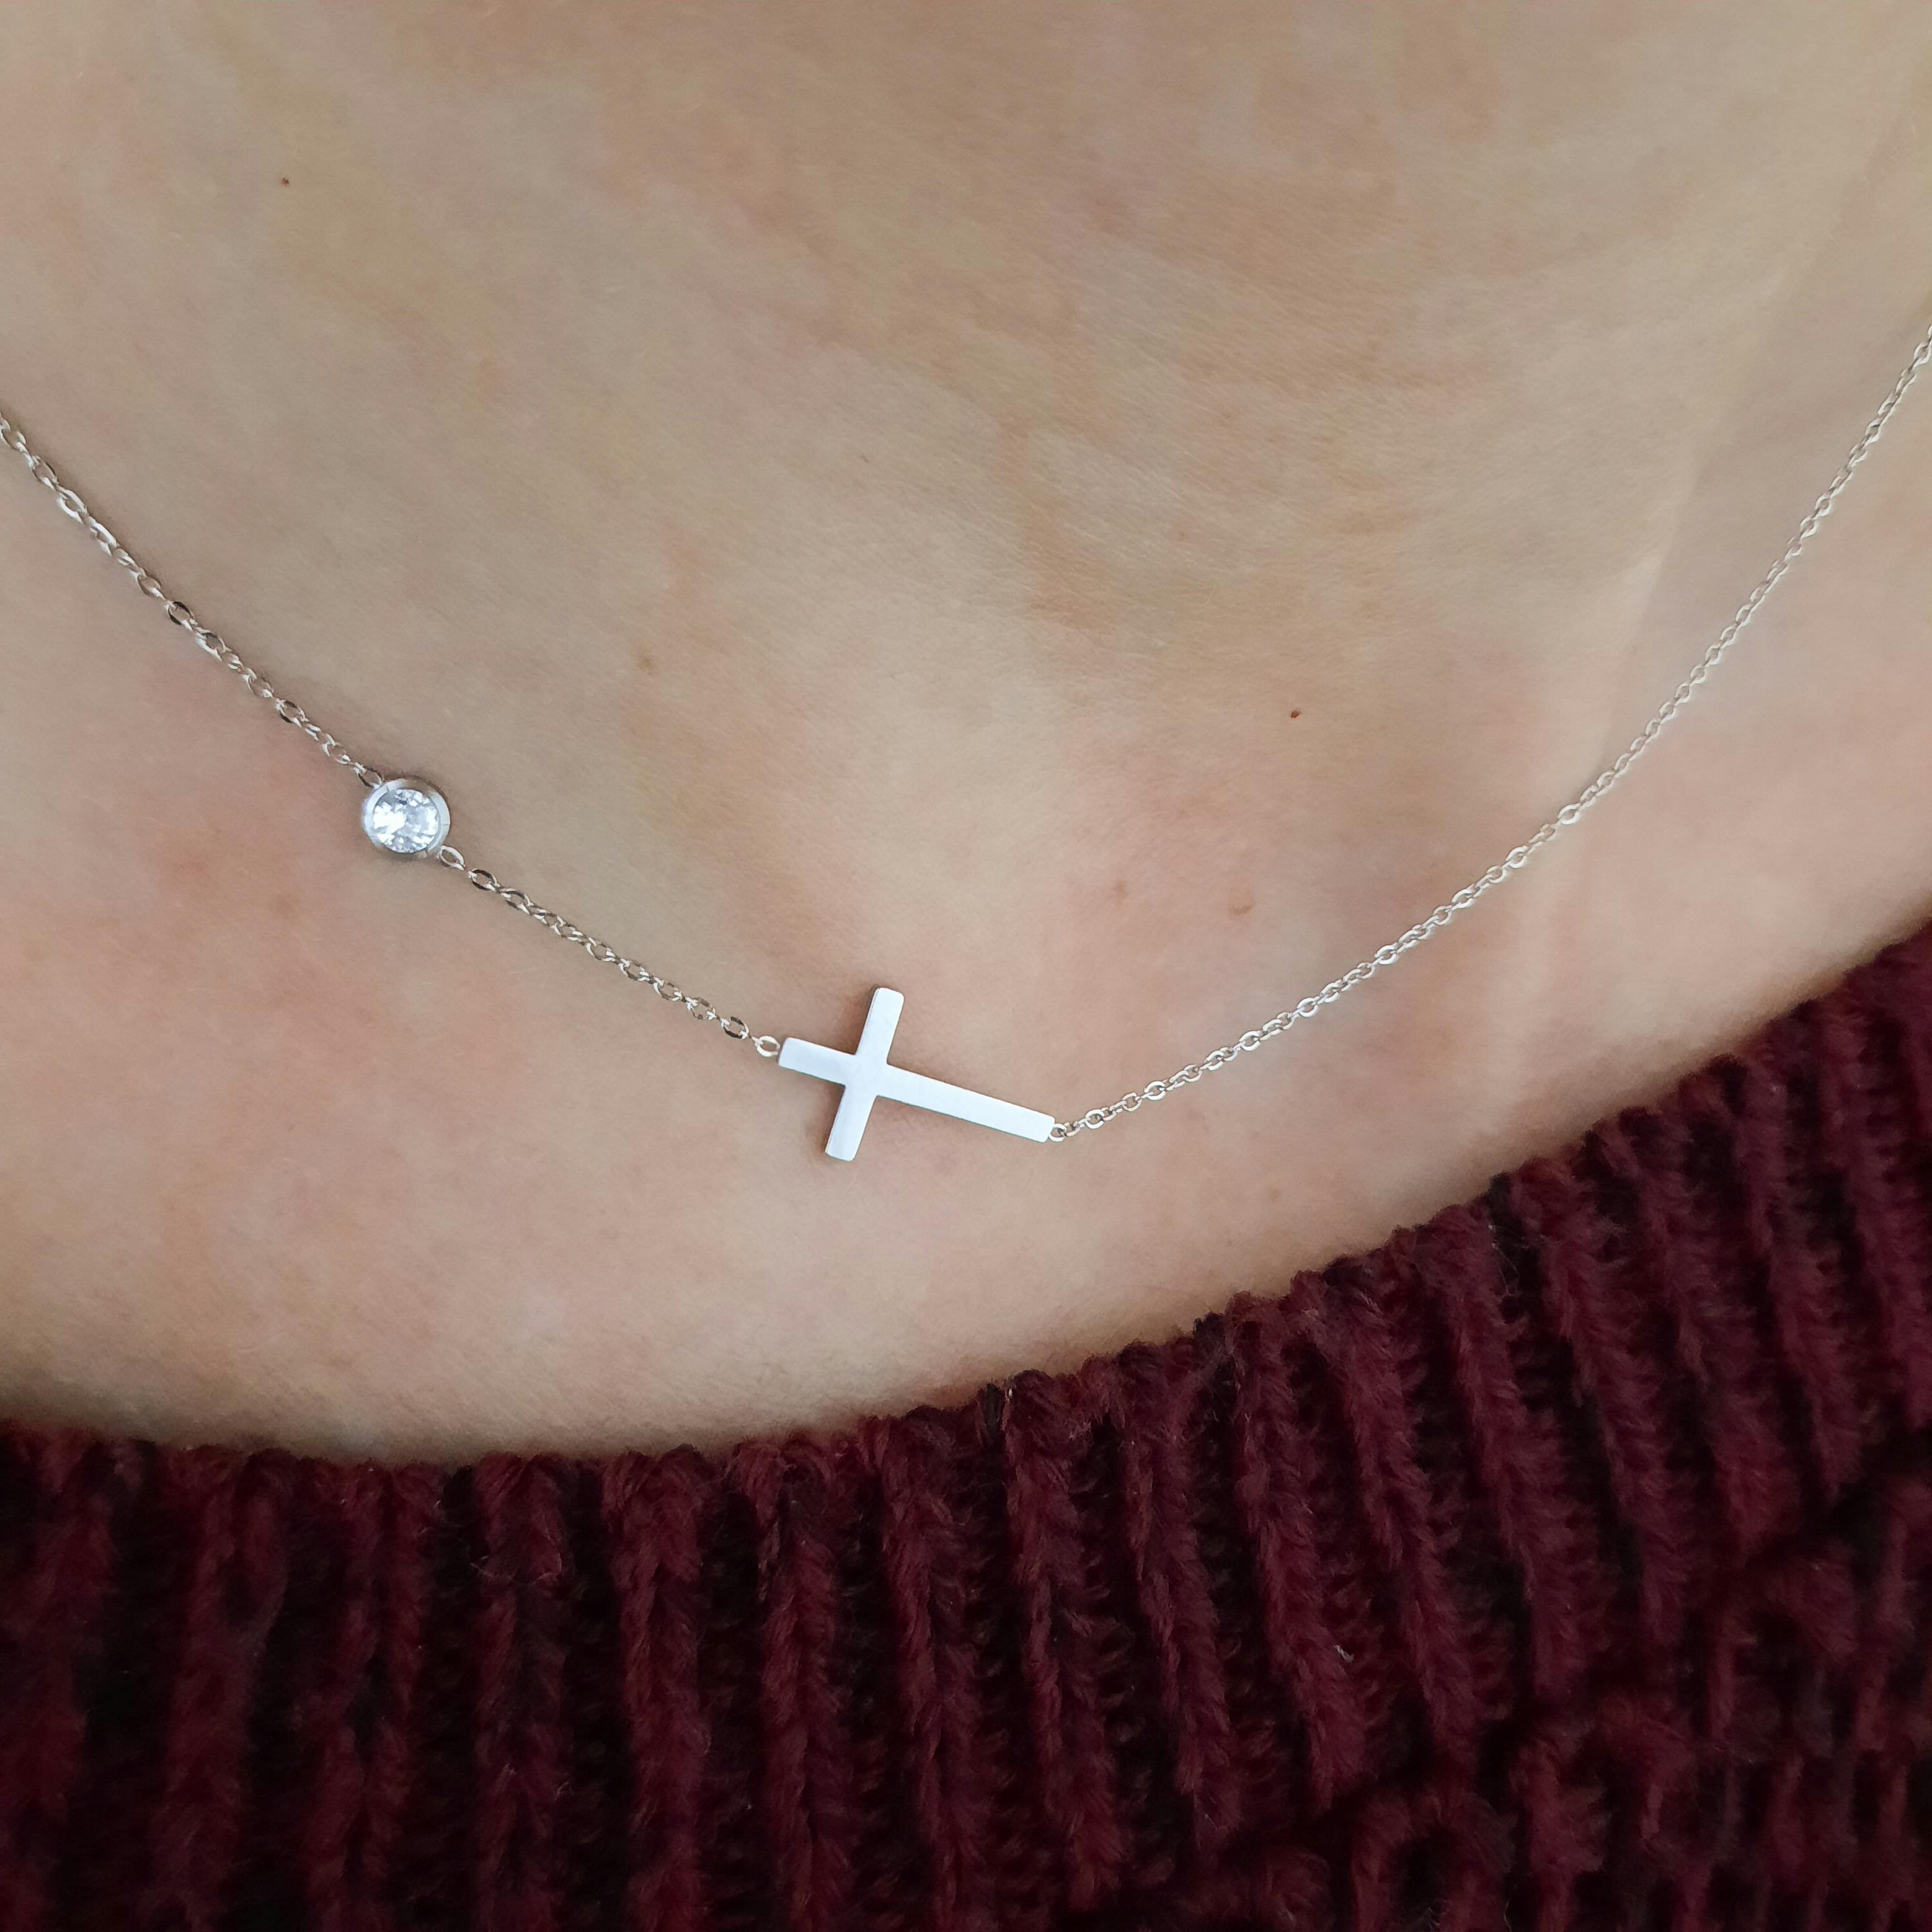 Dainty cross necklace everyday wear faith silver 